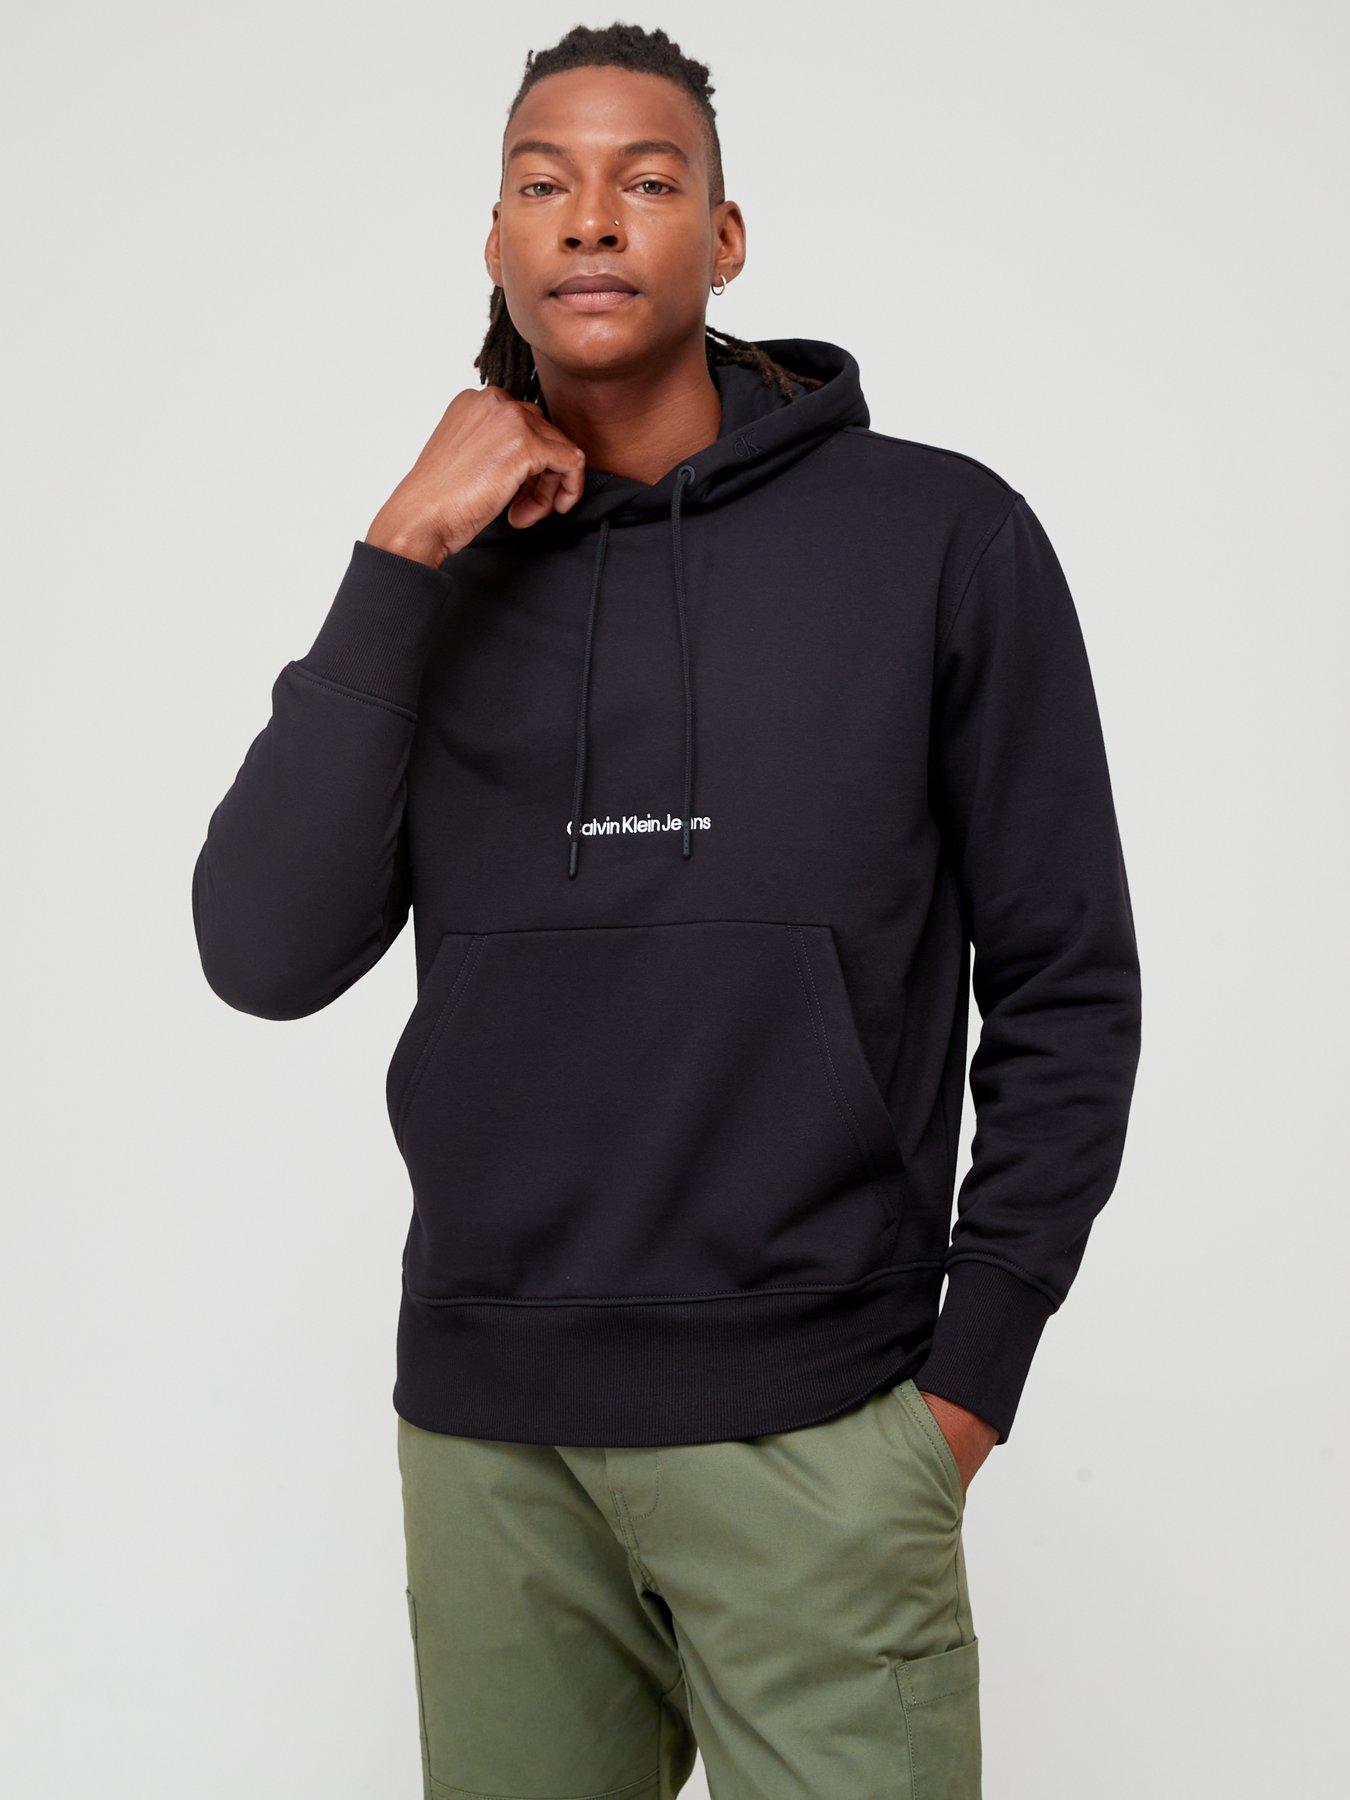 Men's Calvin Klein Hoodies & Sweatshirts | Very.co.uk